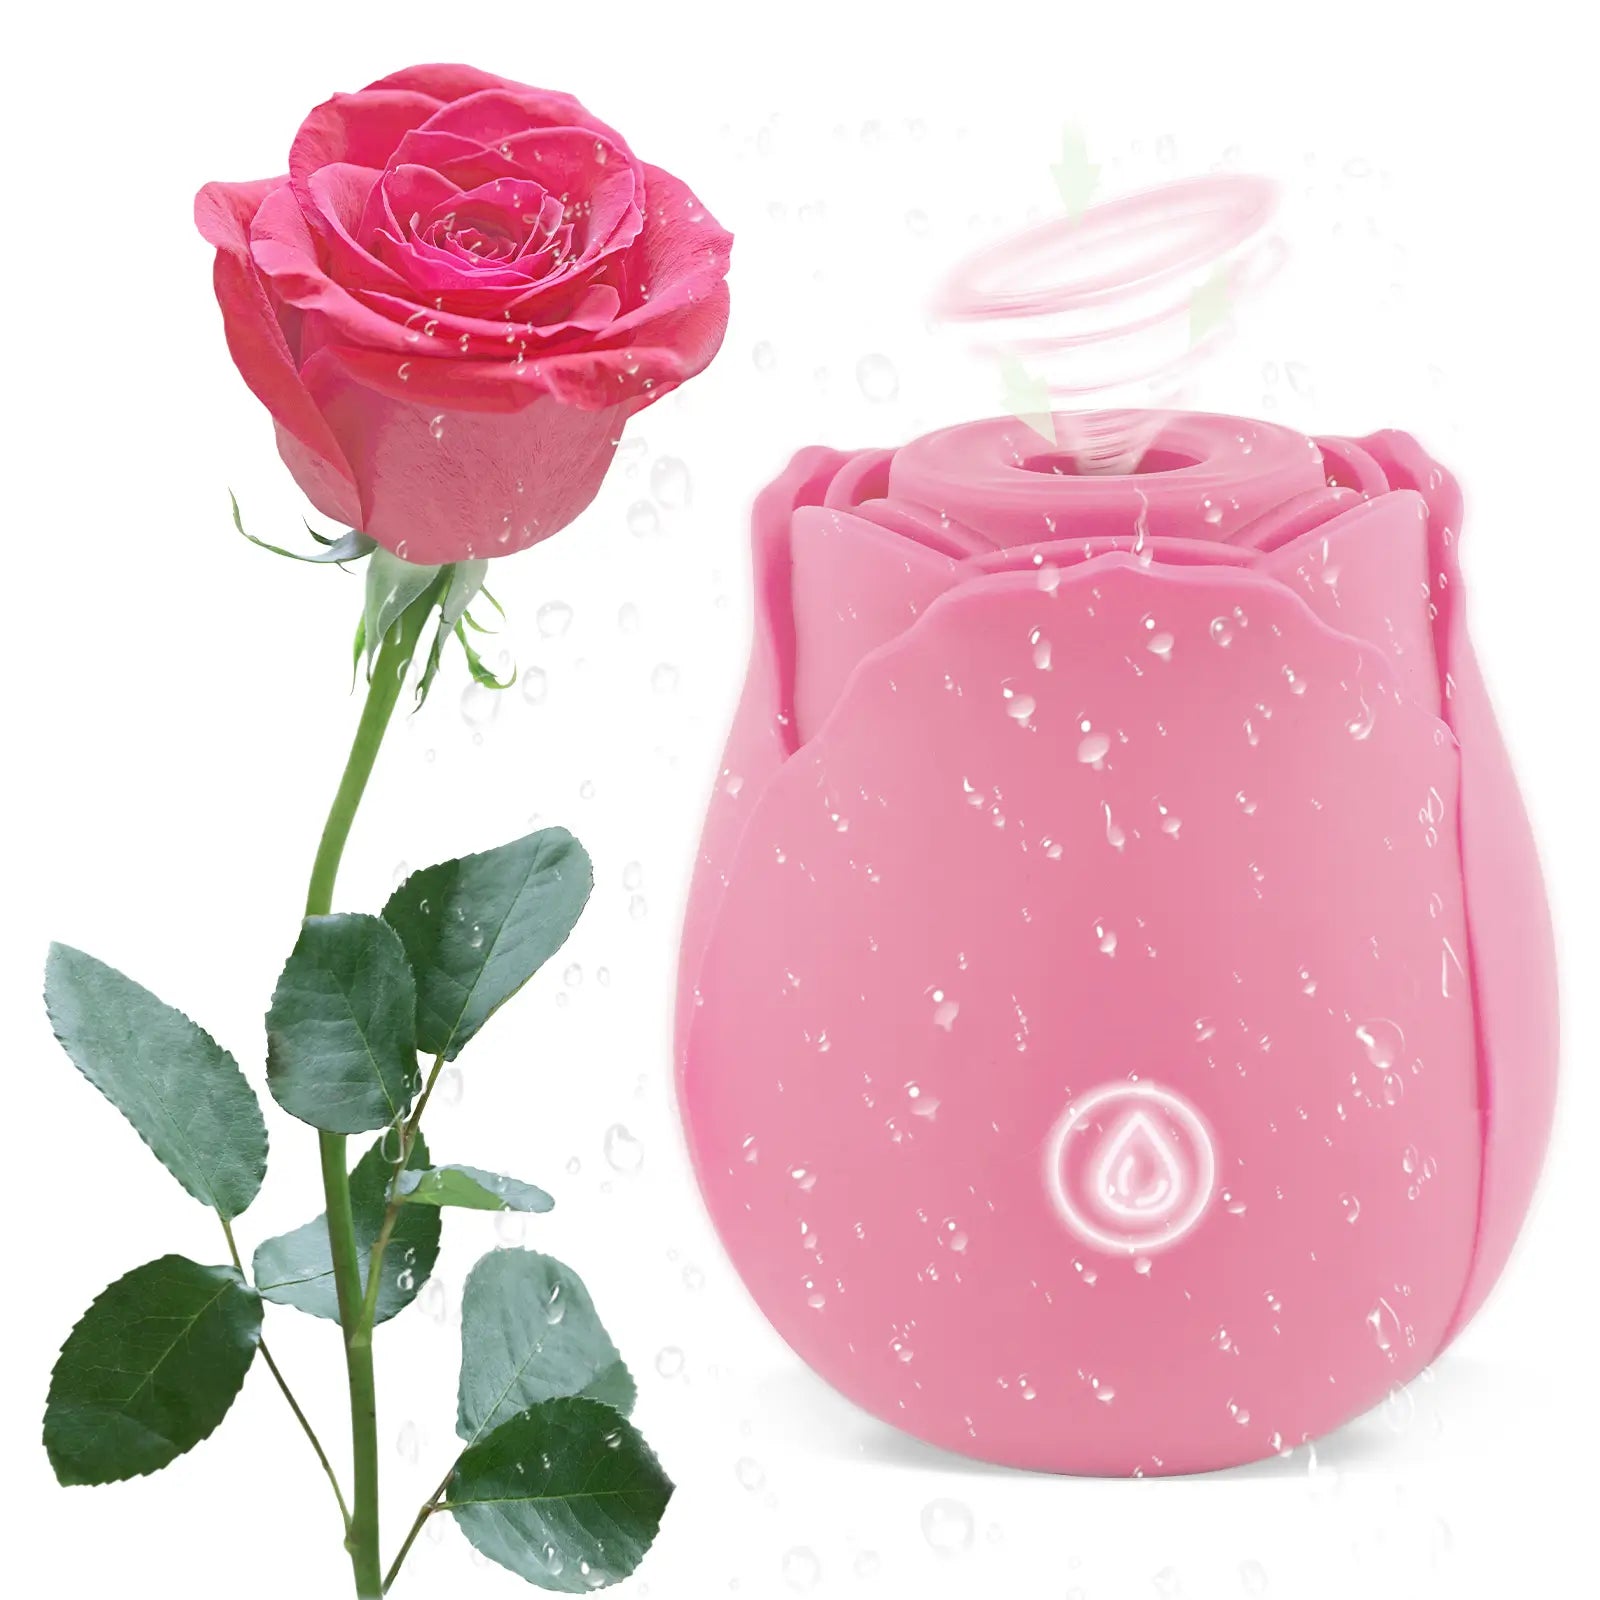 pink rose toy